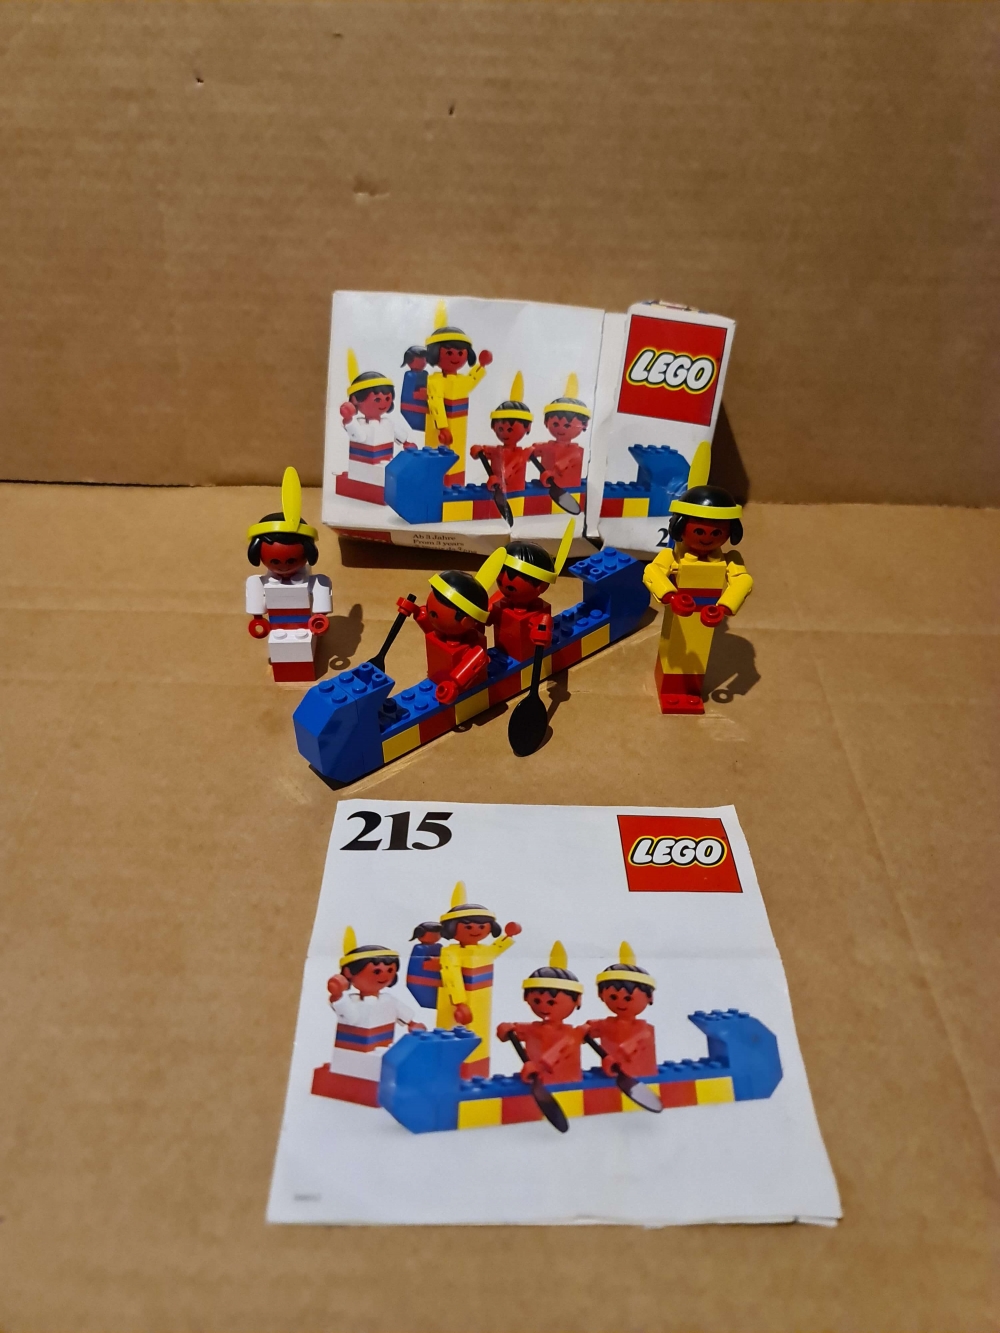 Sett 215 fra Lego : Buildings Sets With People : Western : Indians serien.
Fint sett. Komplett med manual og noe sliten eske.